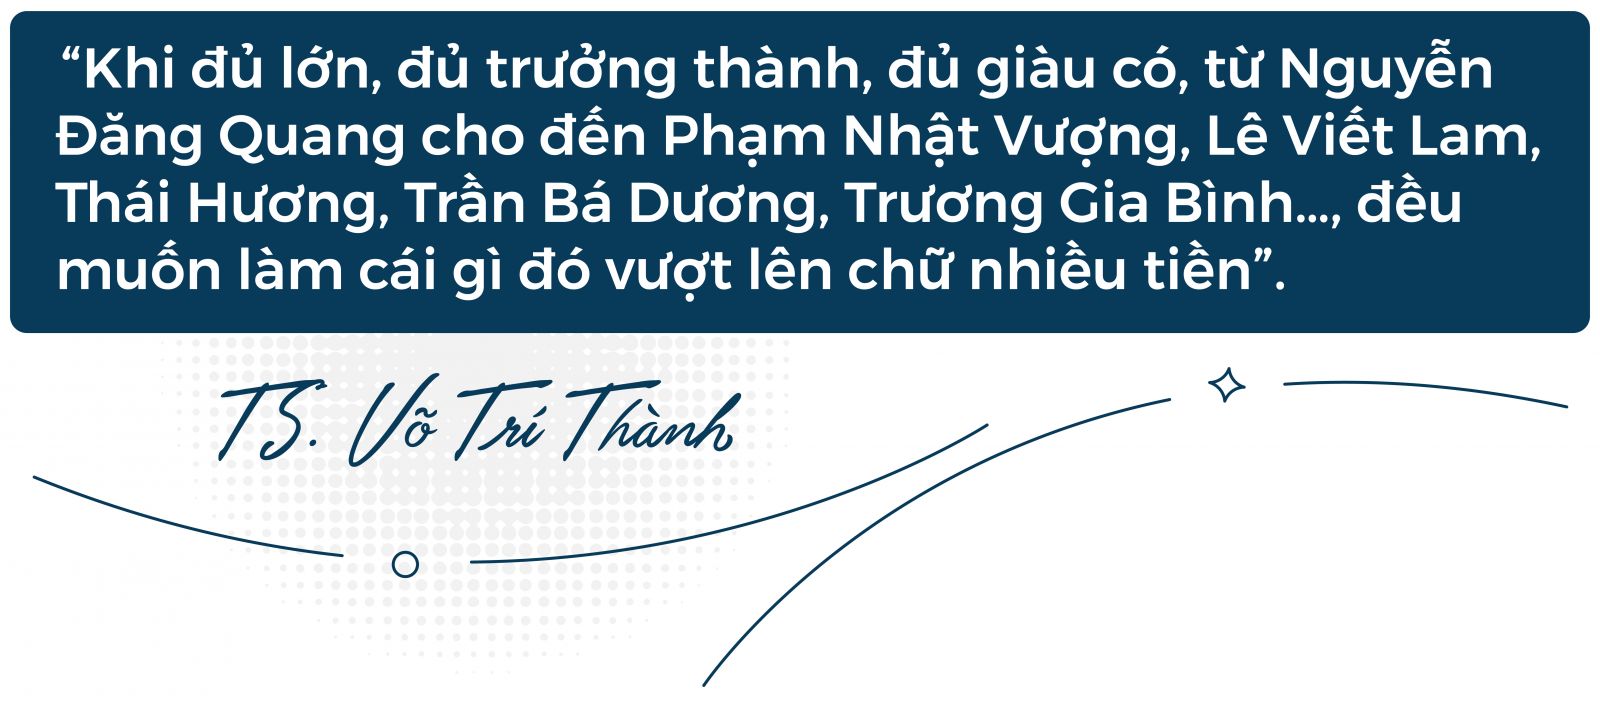 Masan - Nguyễn Đăng Quang TS Võ Trí Thành